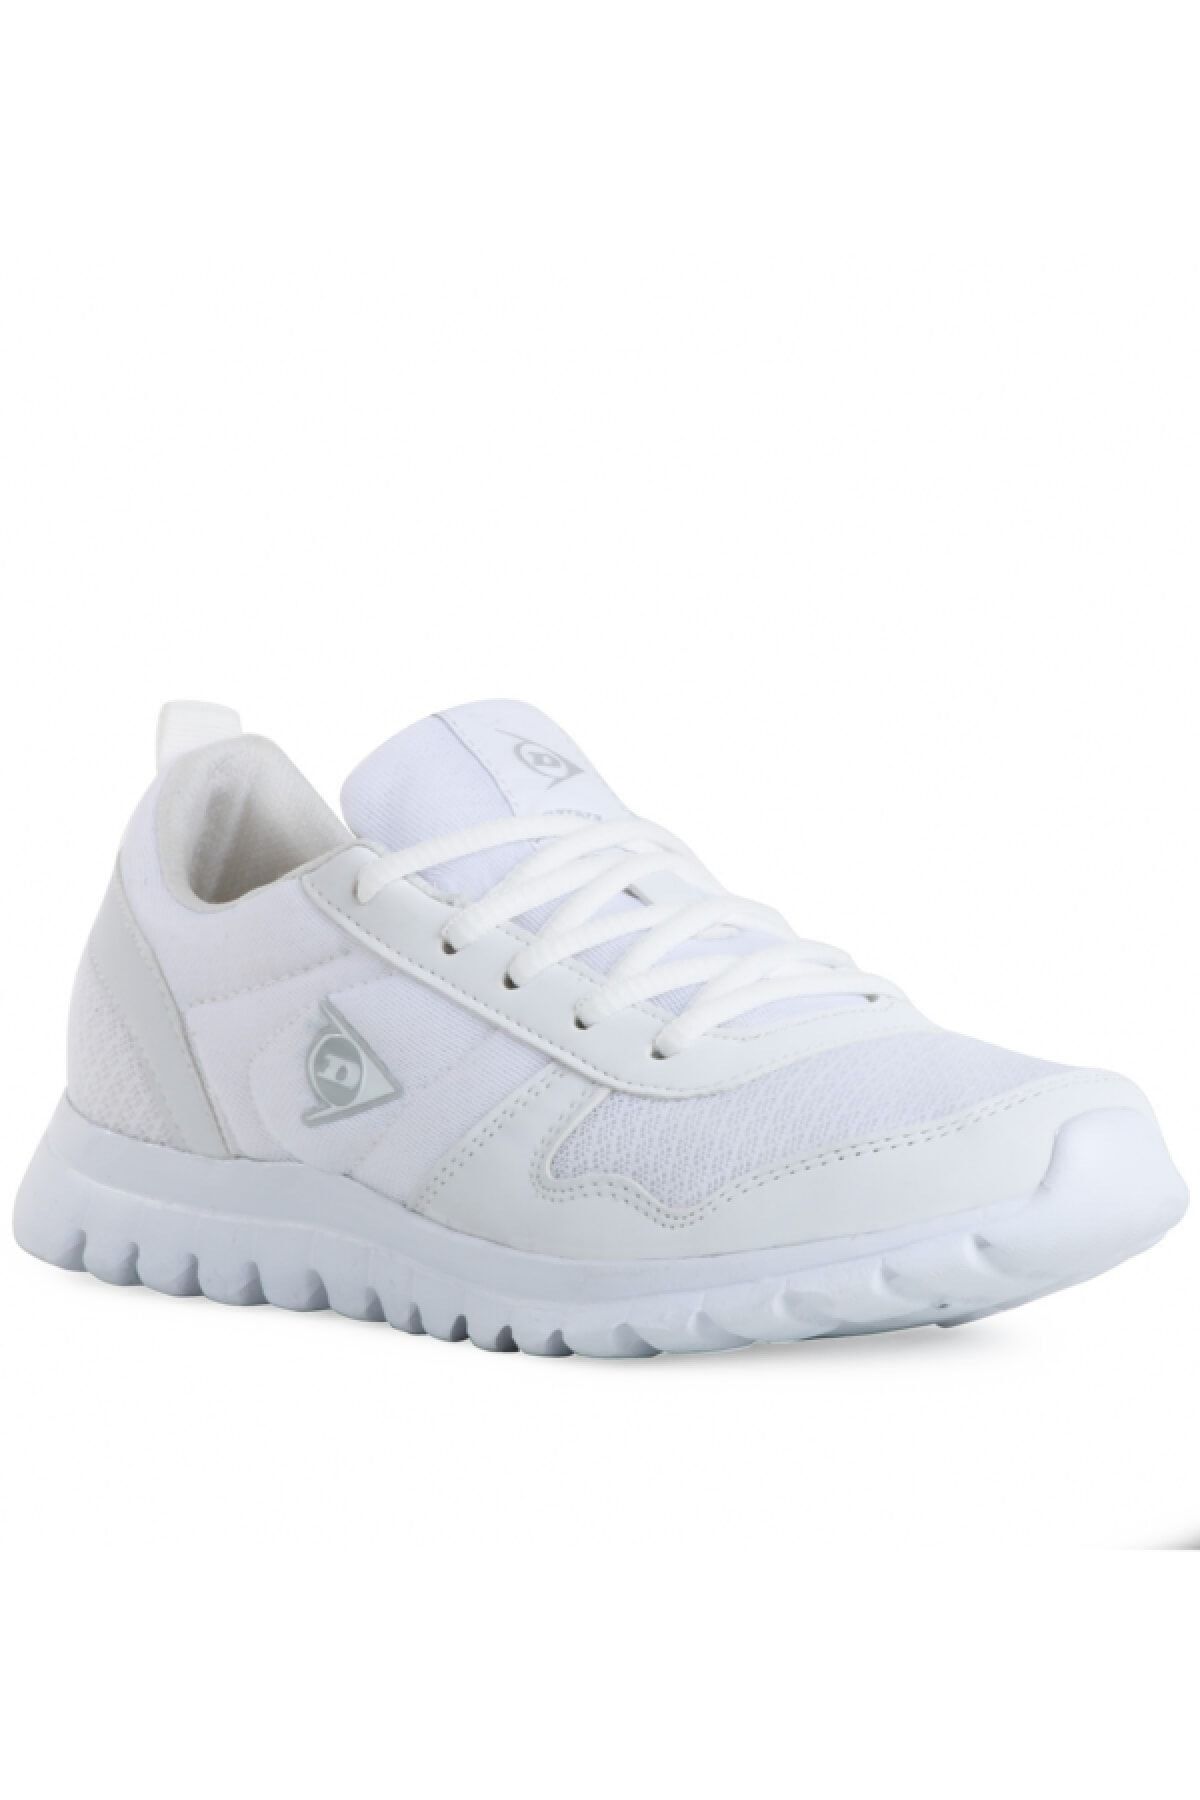 Dunlop 1188 Kadın Spor Ayakkabı Beyaz